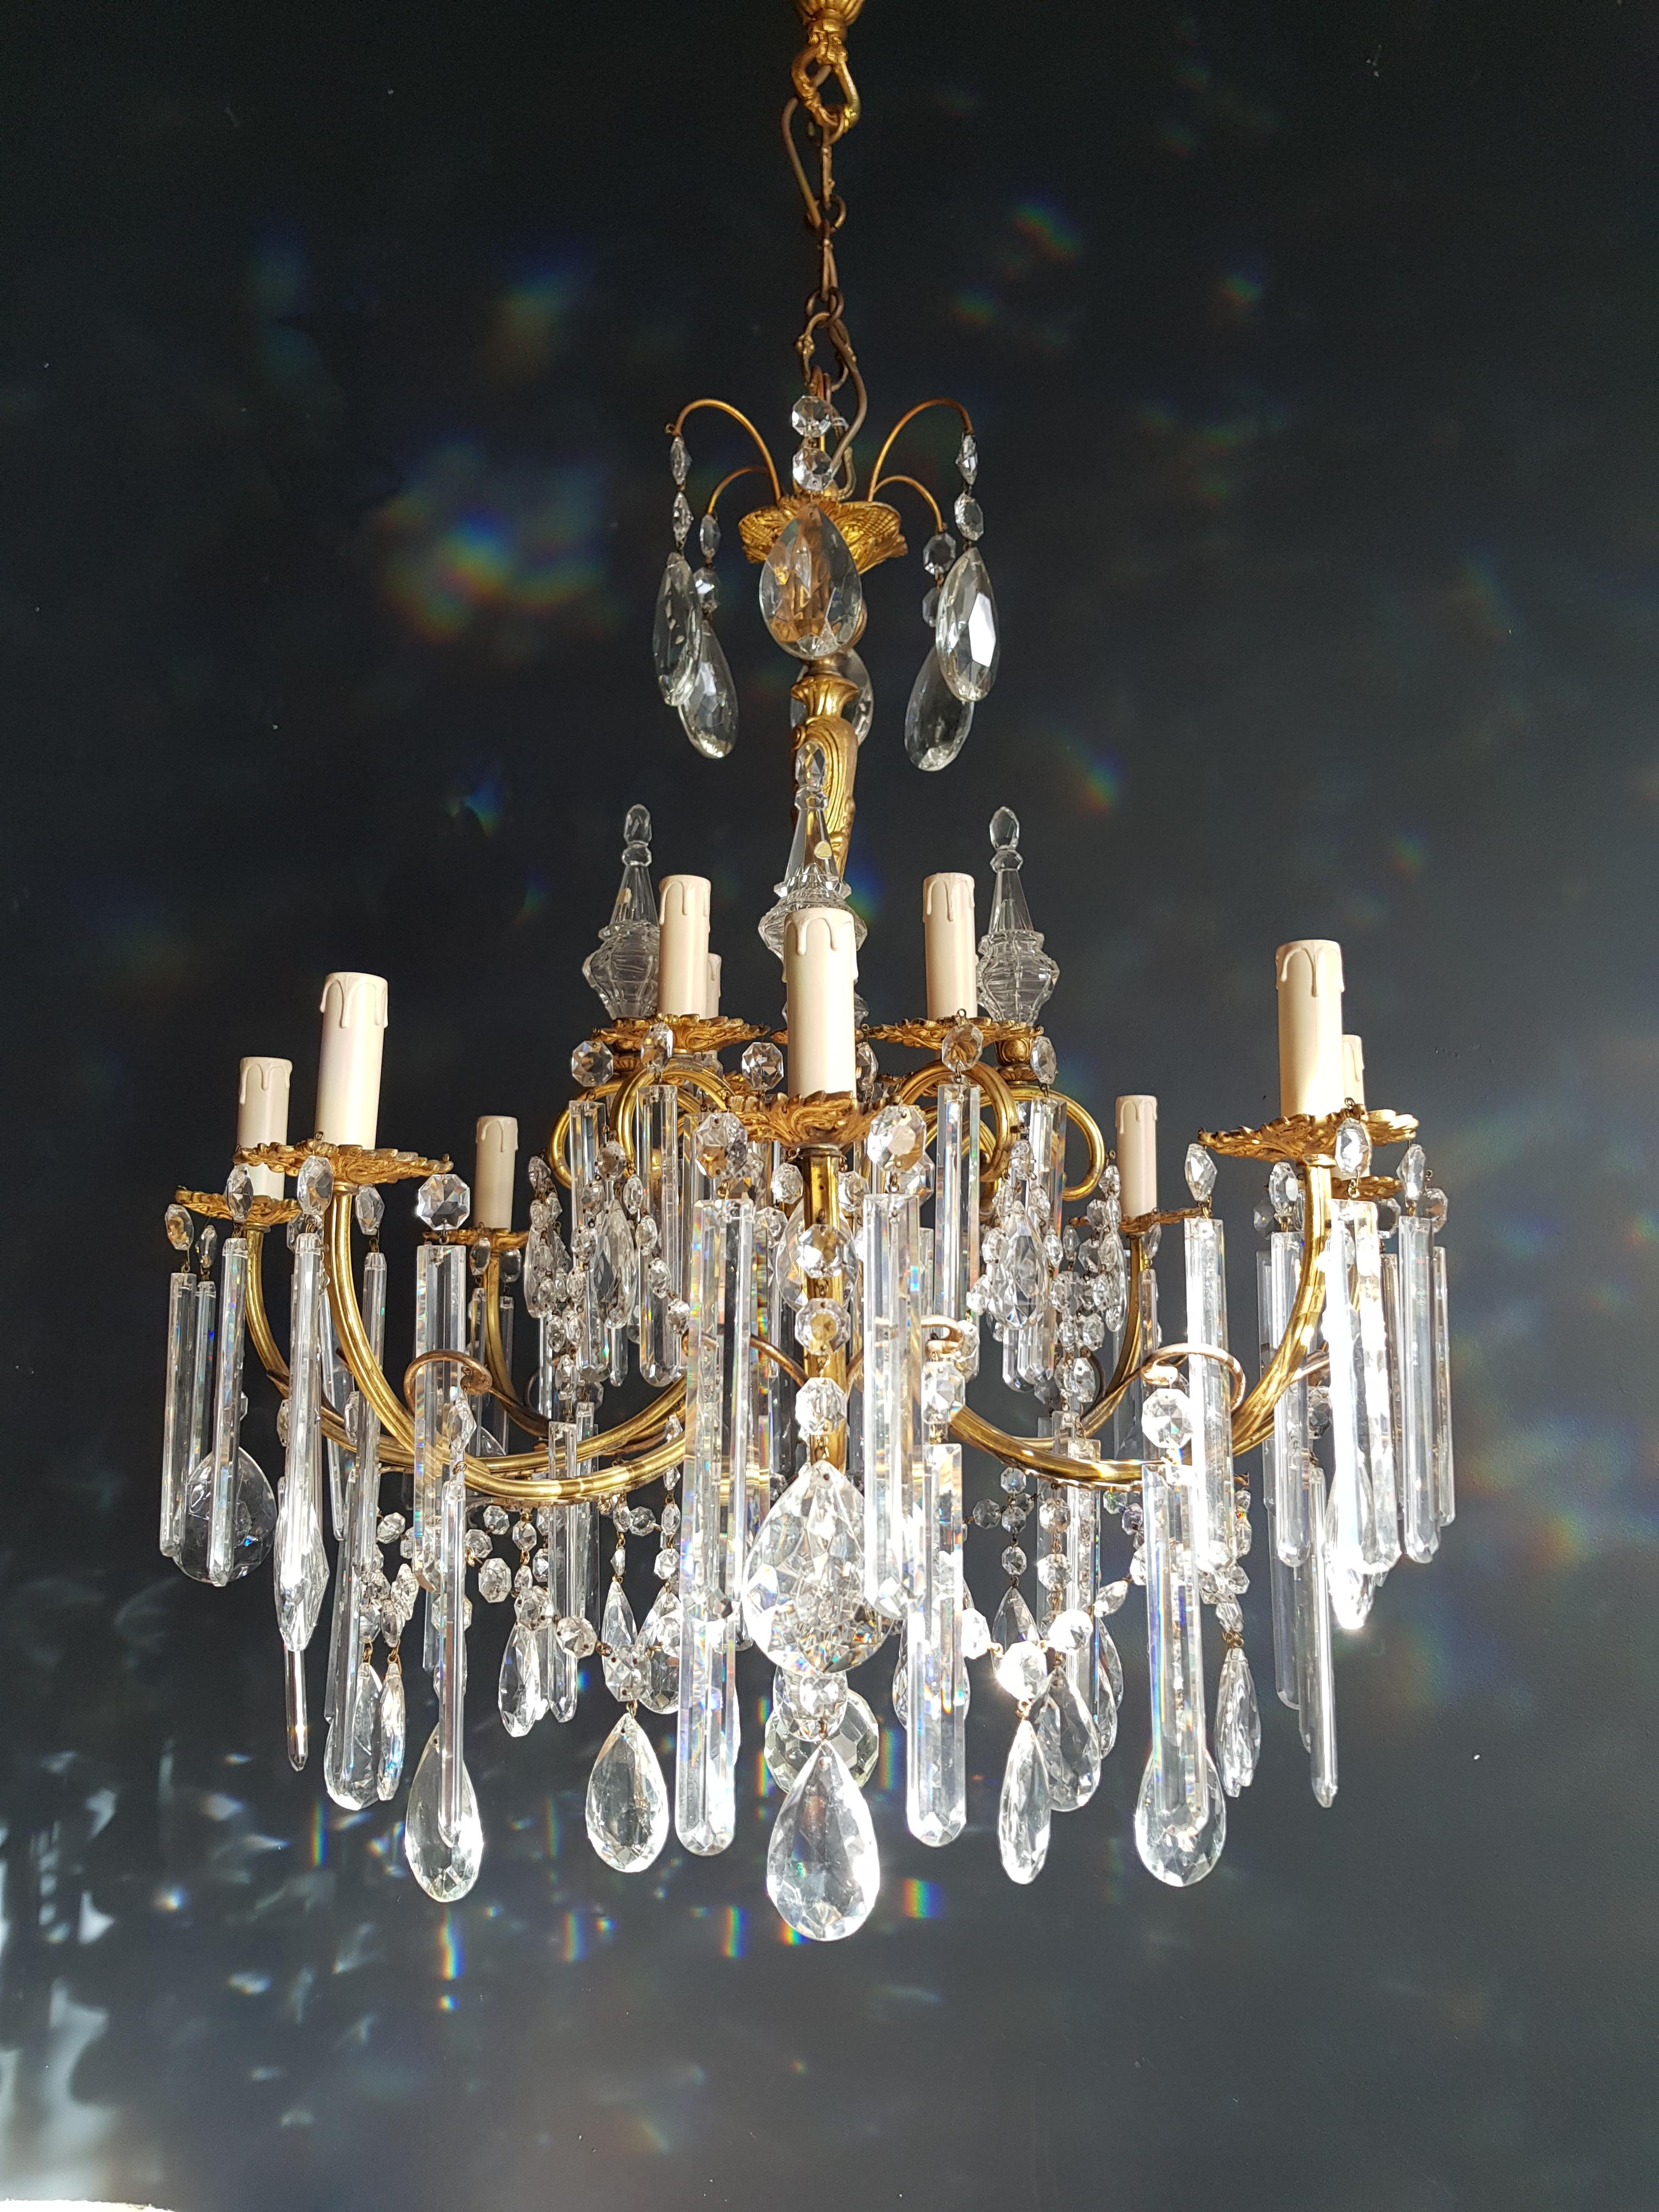 Gilded Crystal Bohemia Chandelier Antique Ceiling Lamp Lustre Art Nouveau Candel 1